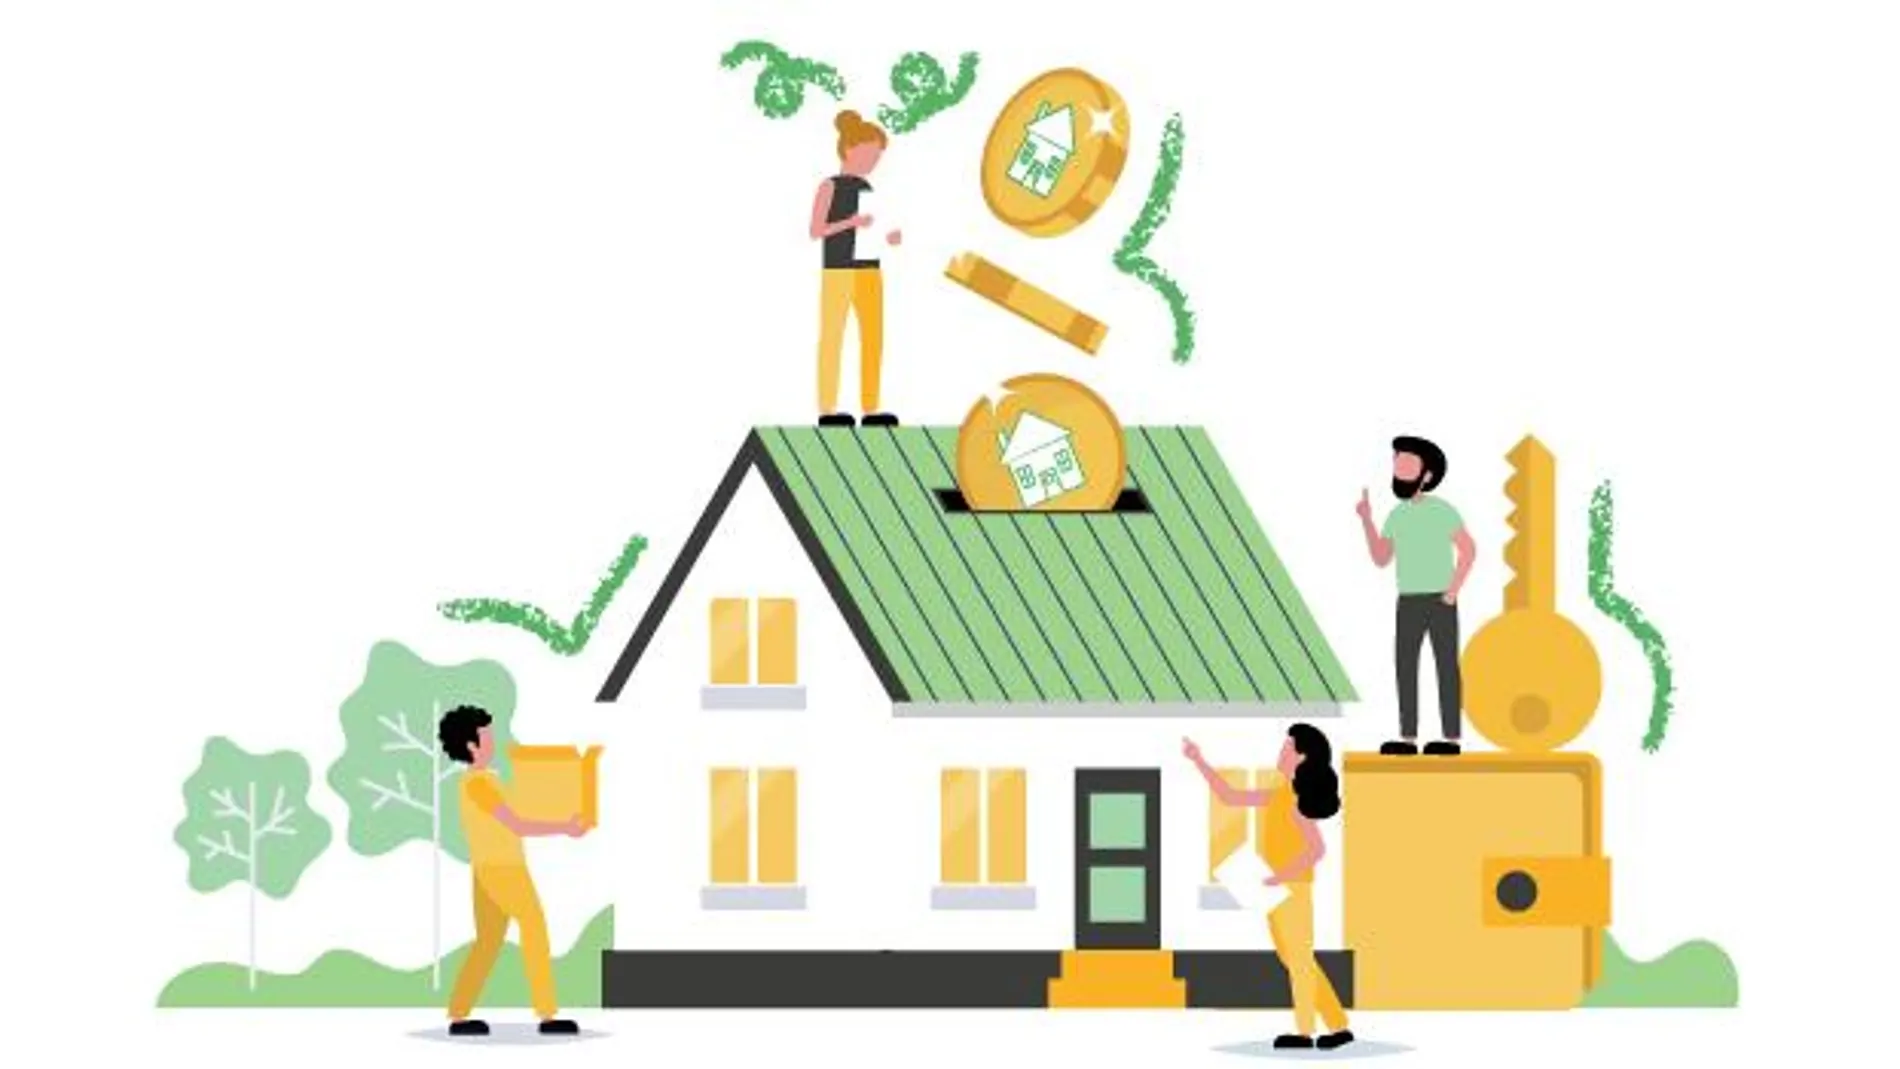 El adiós al promotor inmobiliario permite un ahorro de hasta el 20% en el precio de la vivienda adquirida en cooperativa